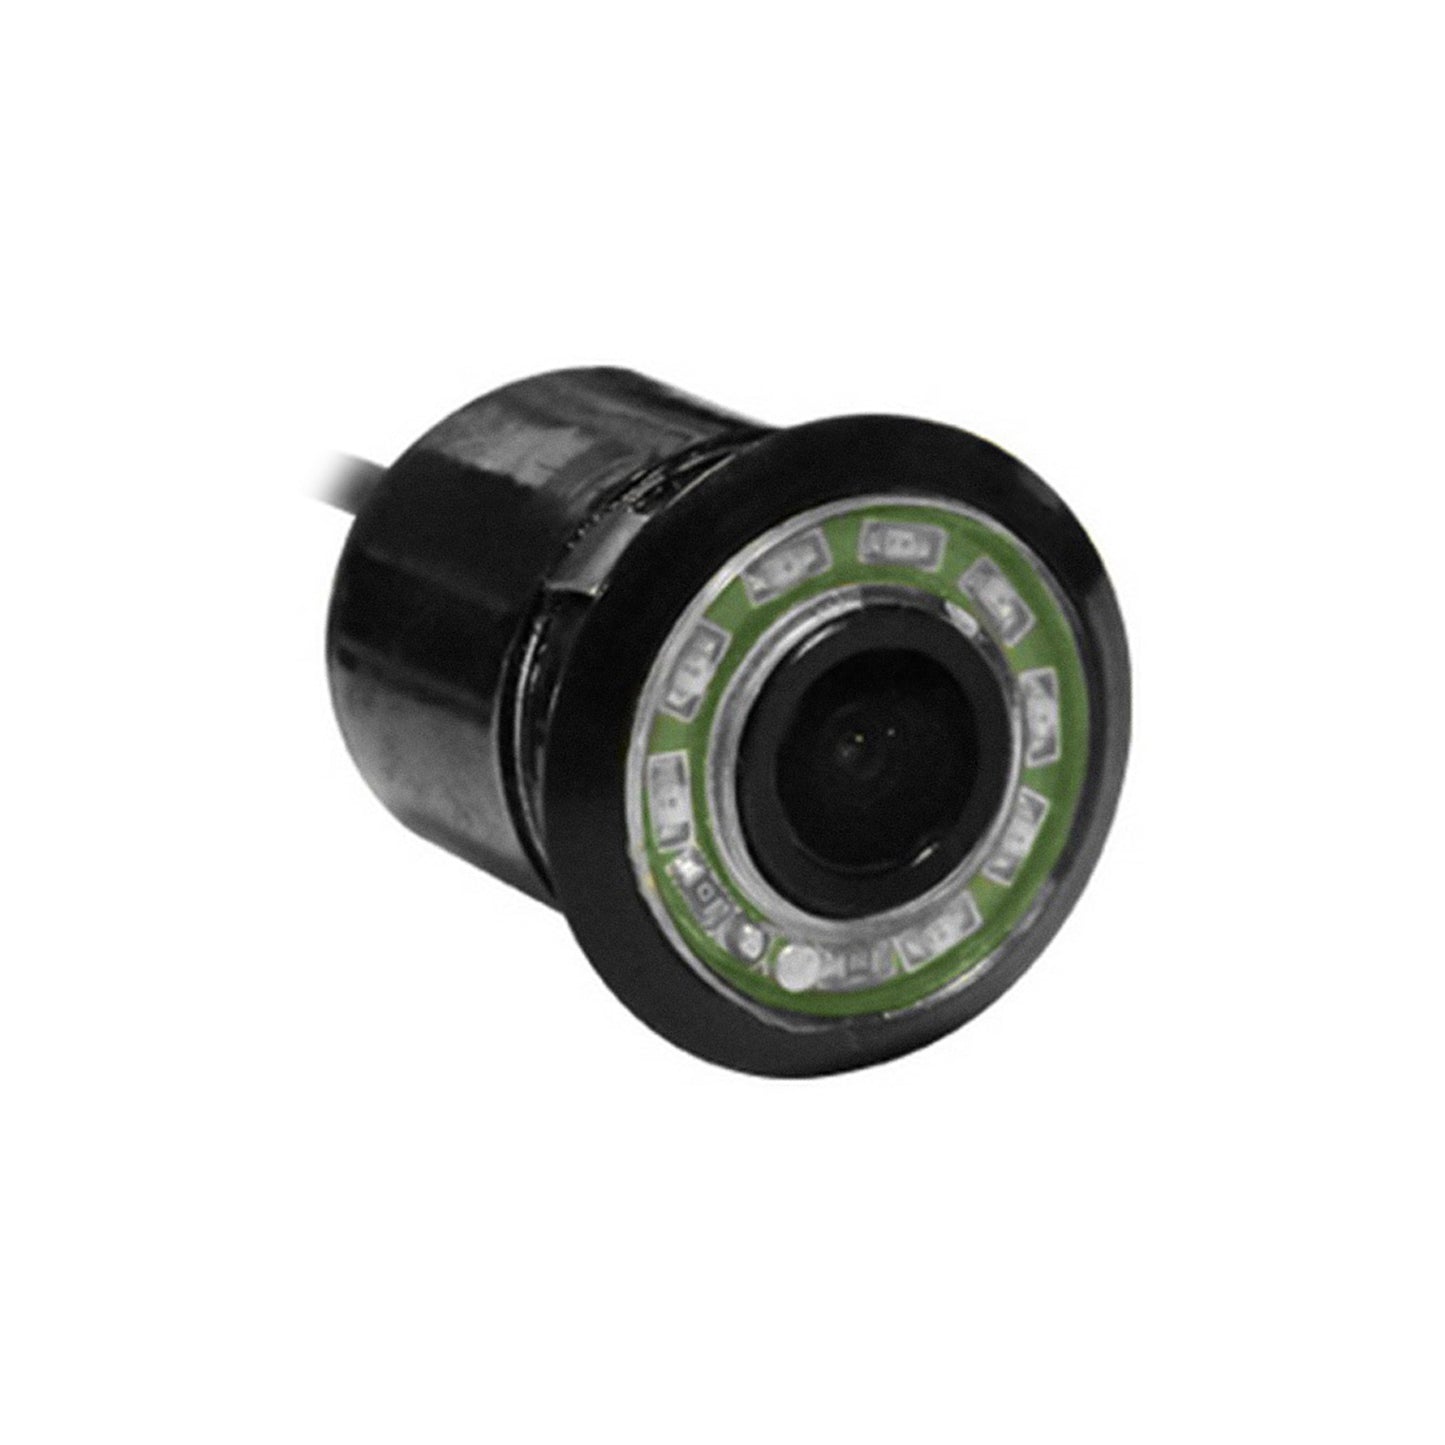 Alcapower Telecamera CCD da innesto con funzione mirror e visione notturna, resistente all'acqua, angolo di visione 120°